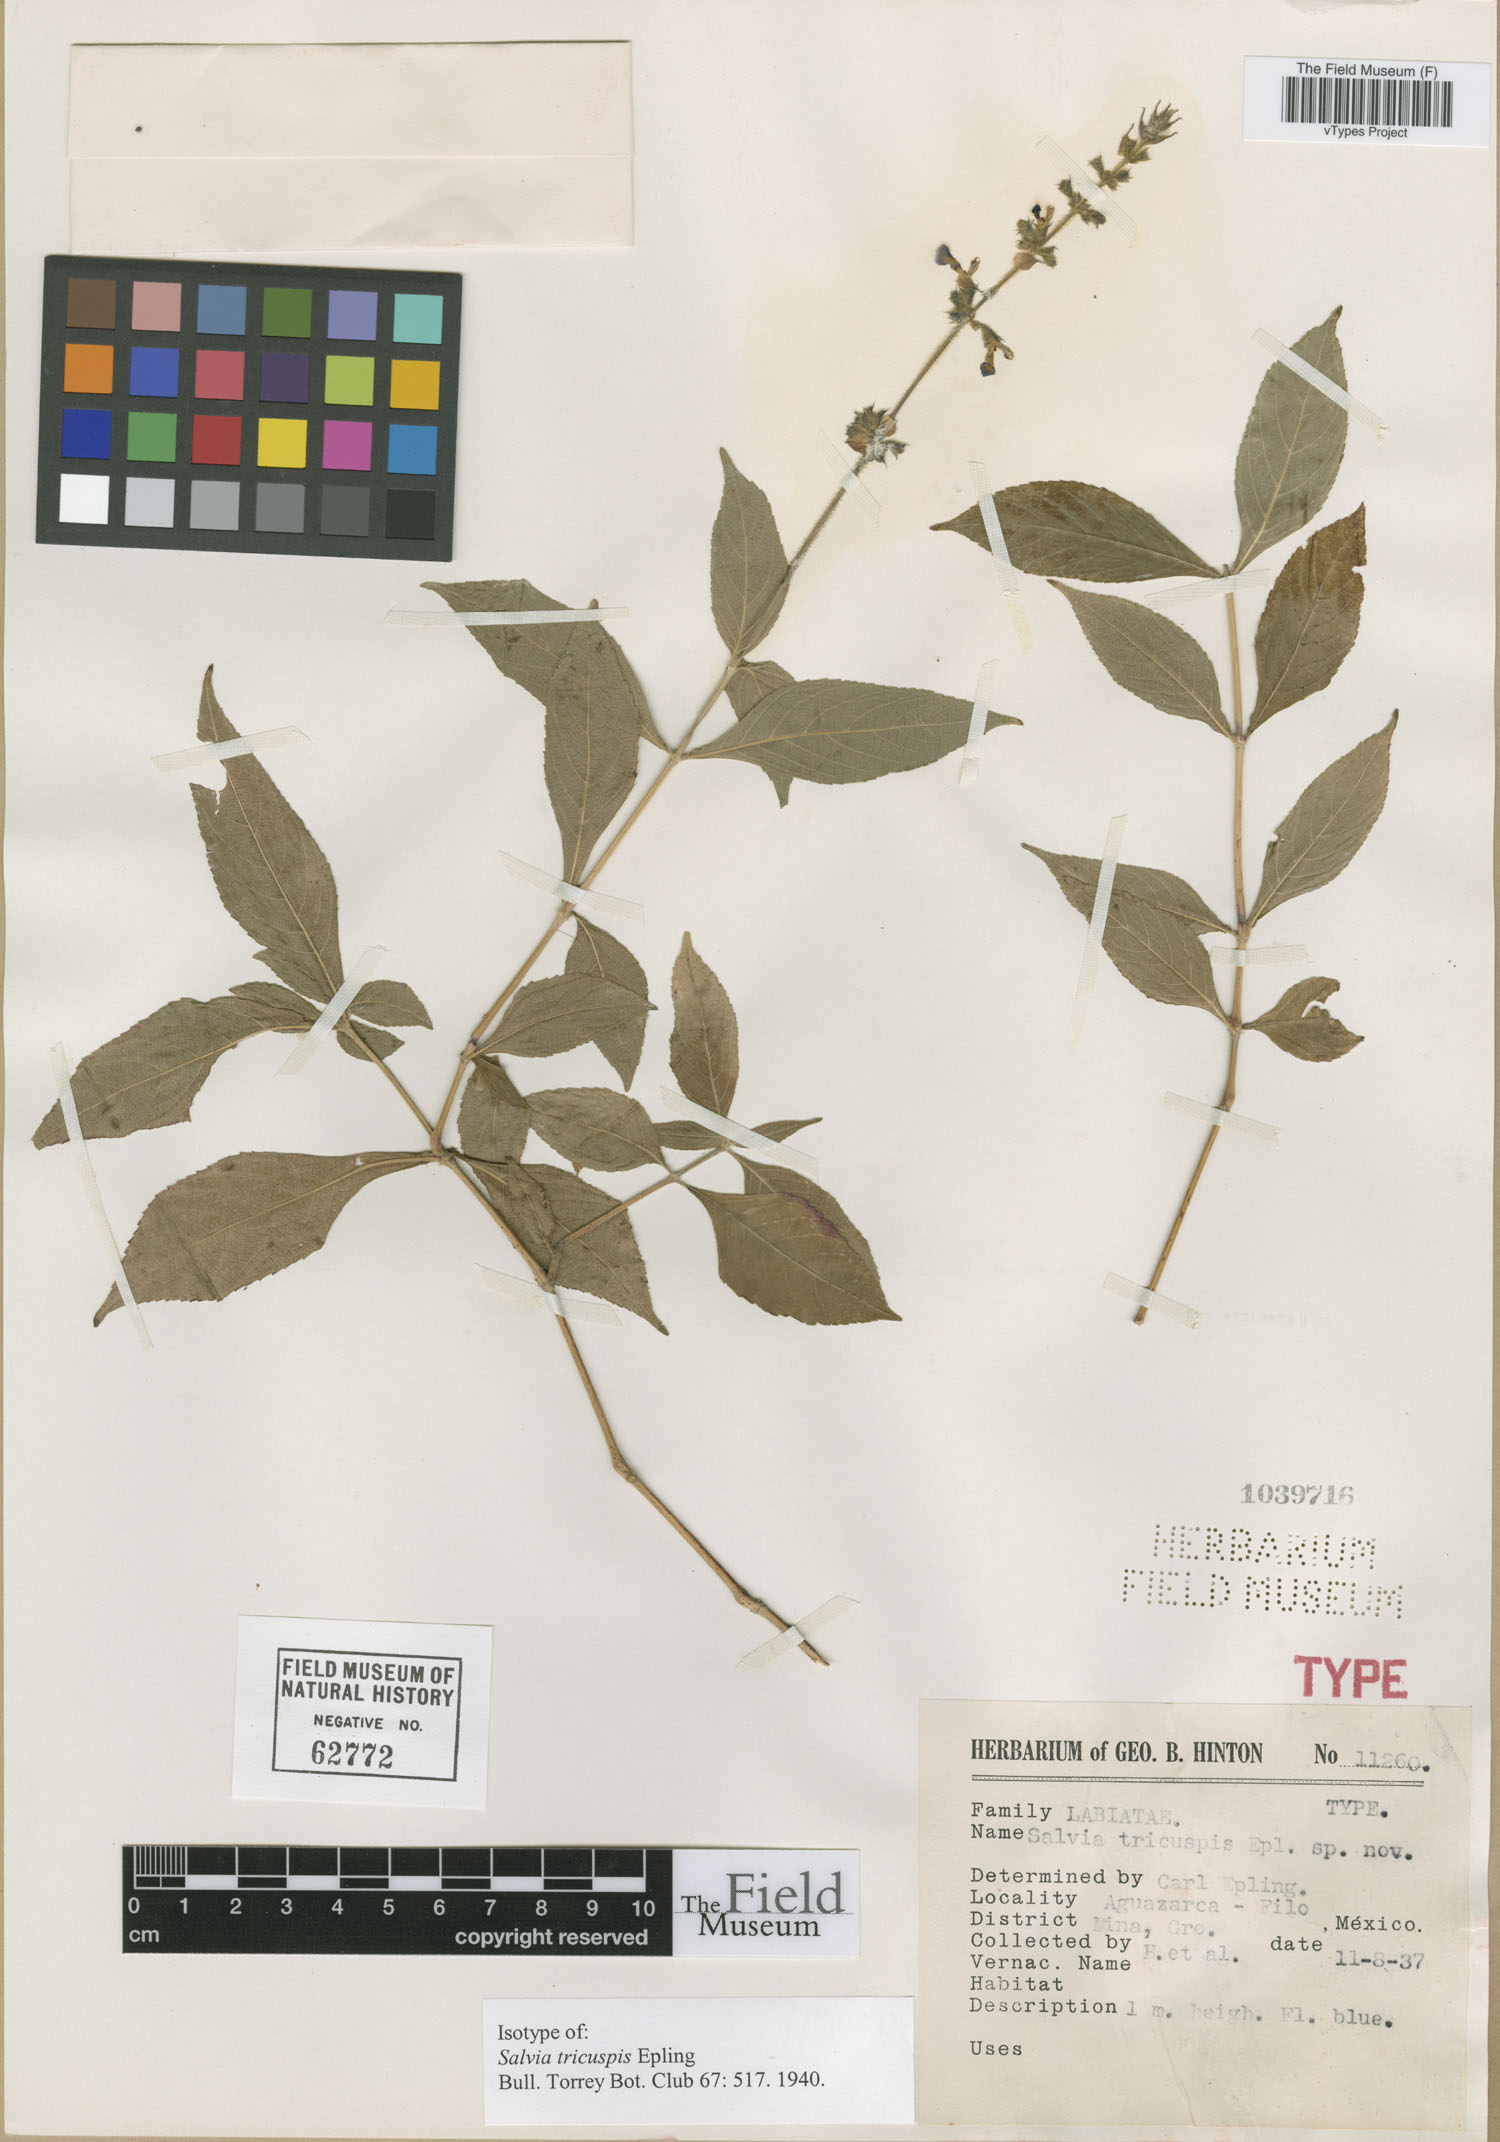 Salvia tricuspis image